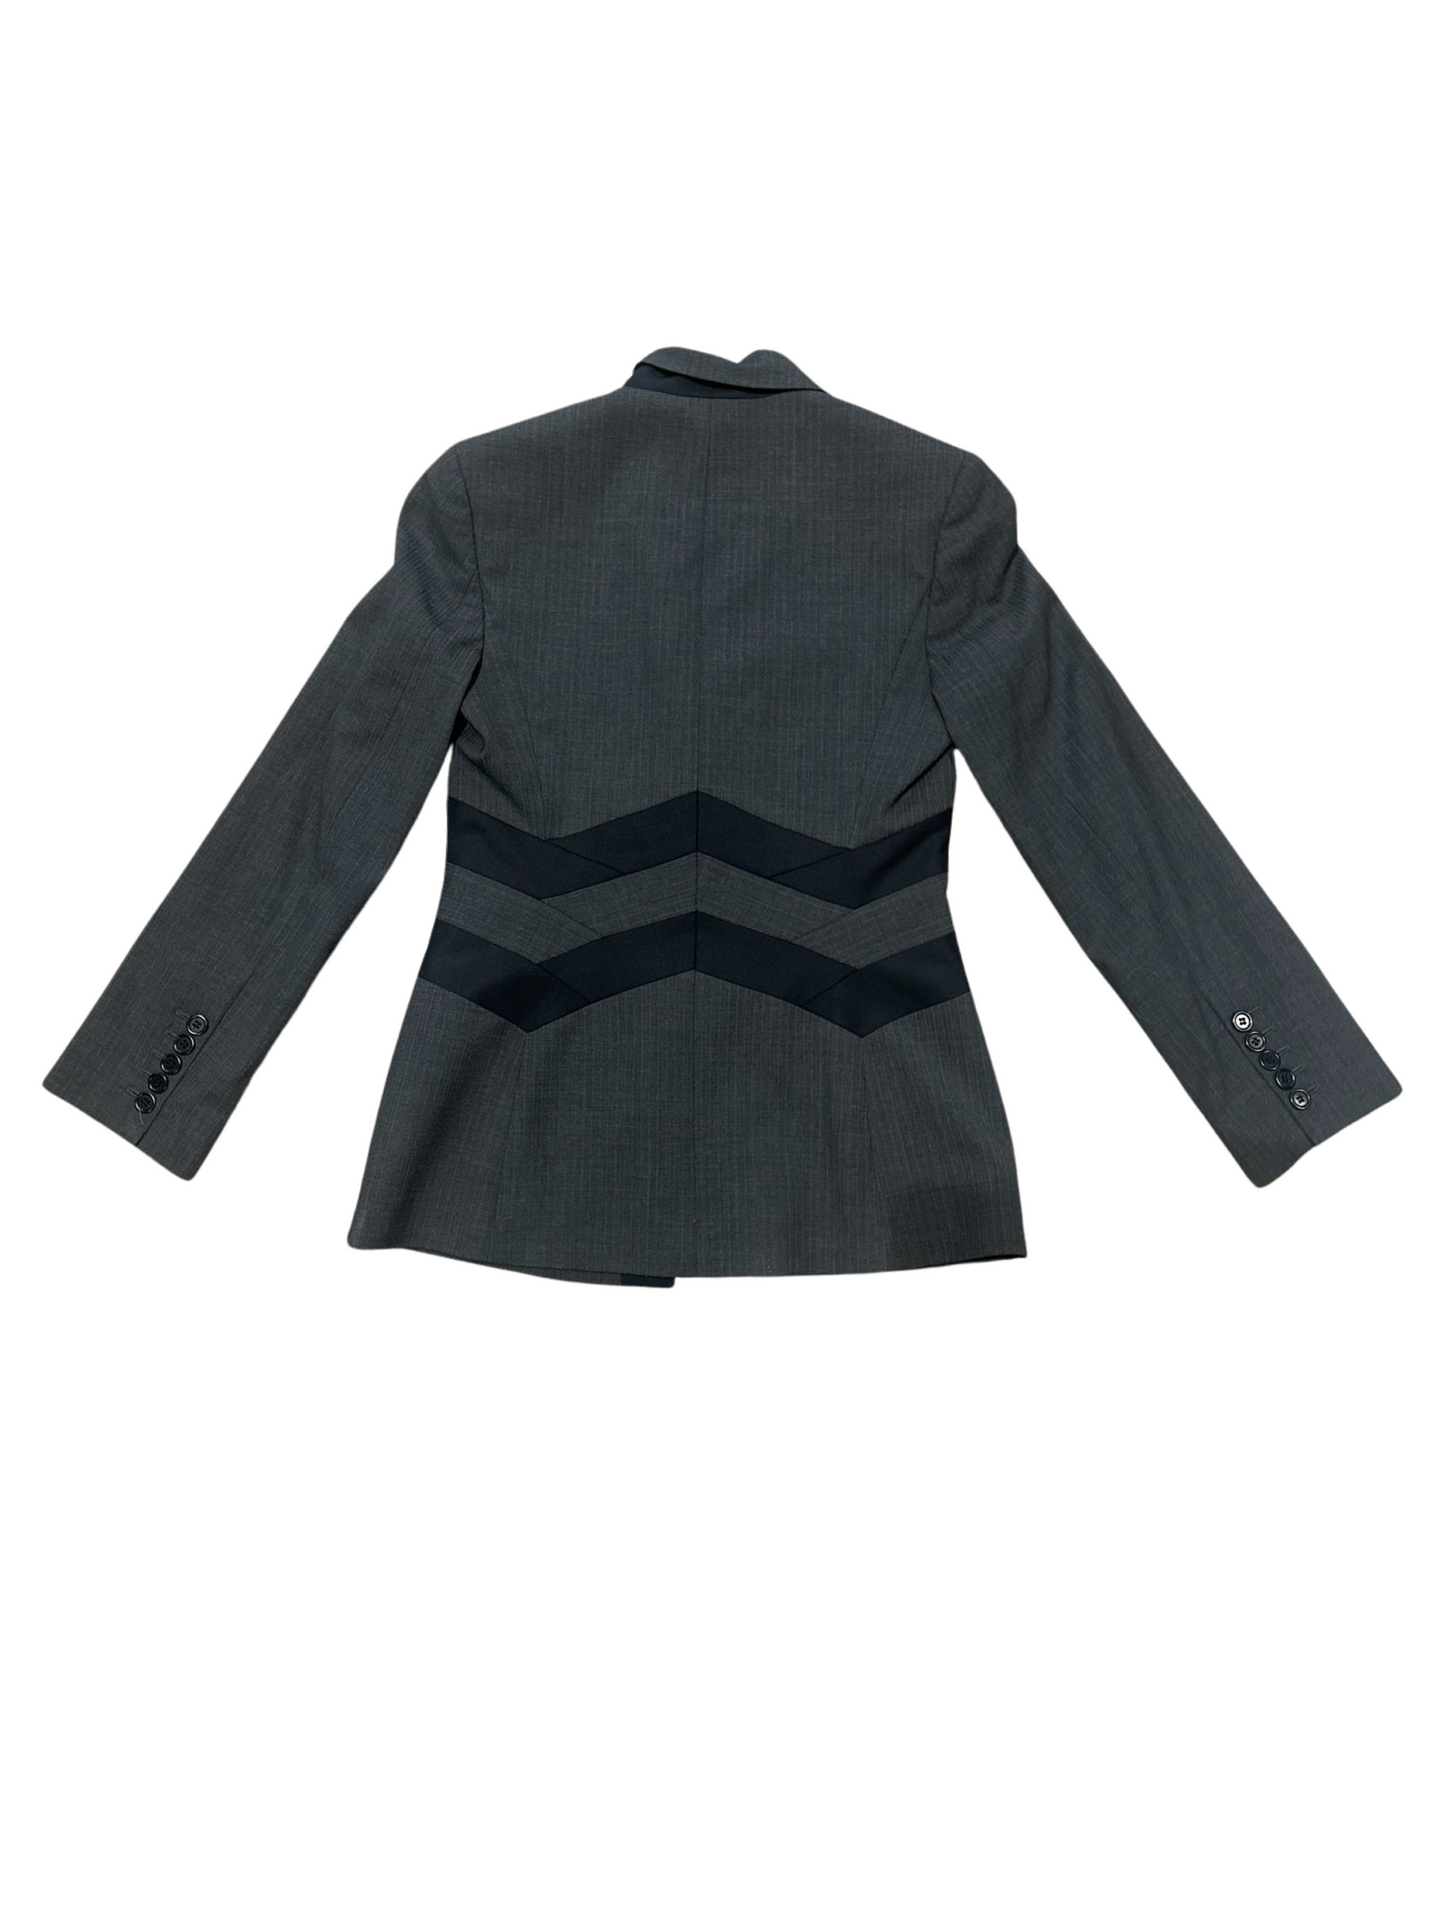 BCBGMaxAzria Grey Black Career Blazer Jacket & Trousers Martine Set XS/2